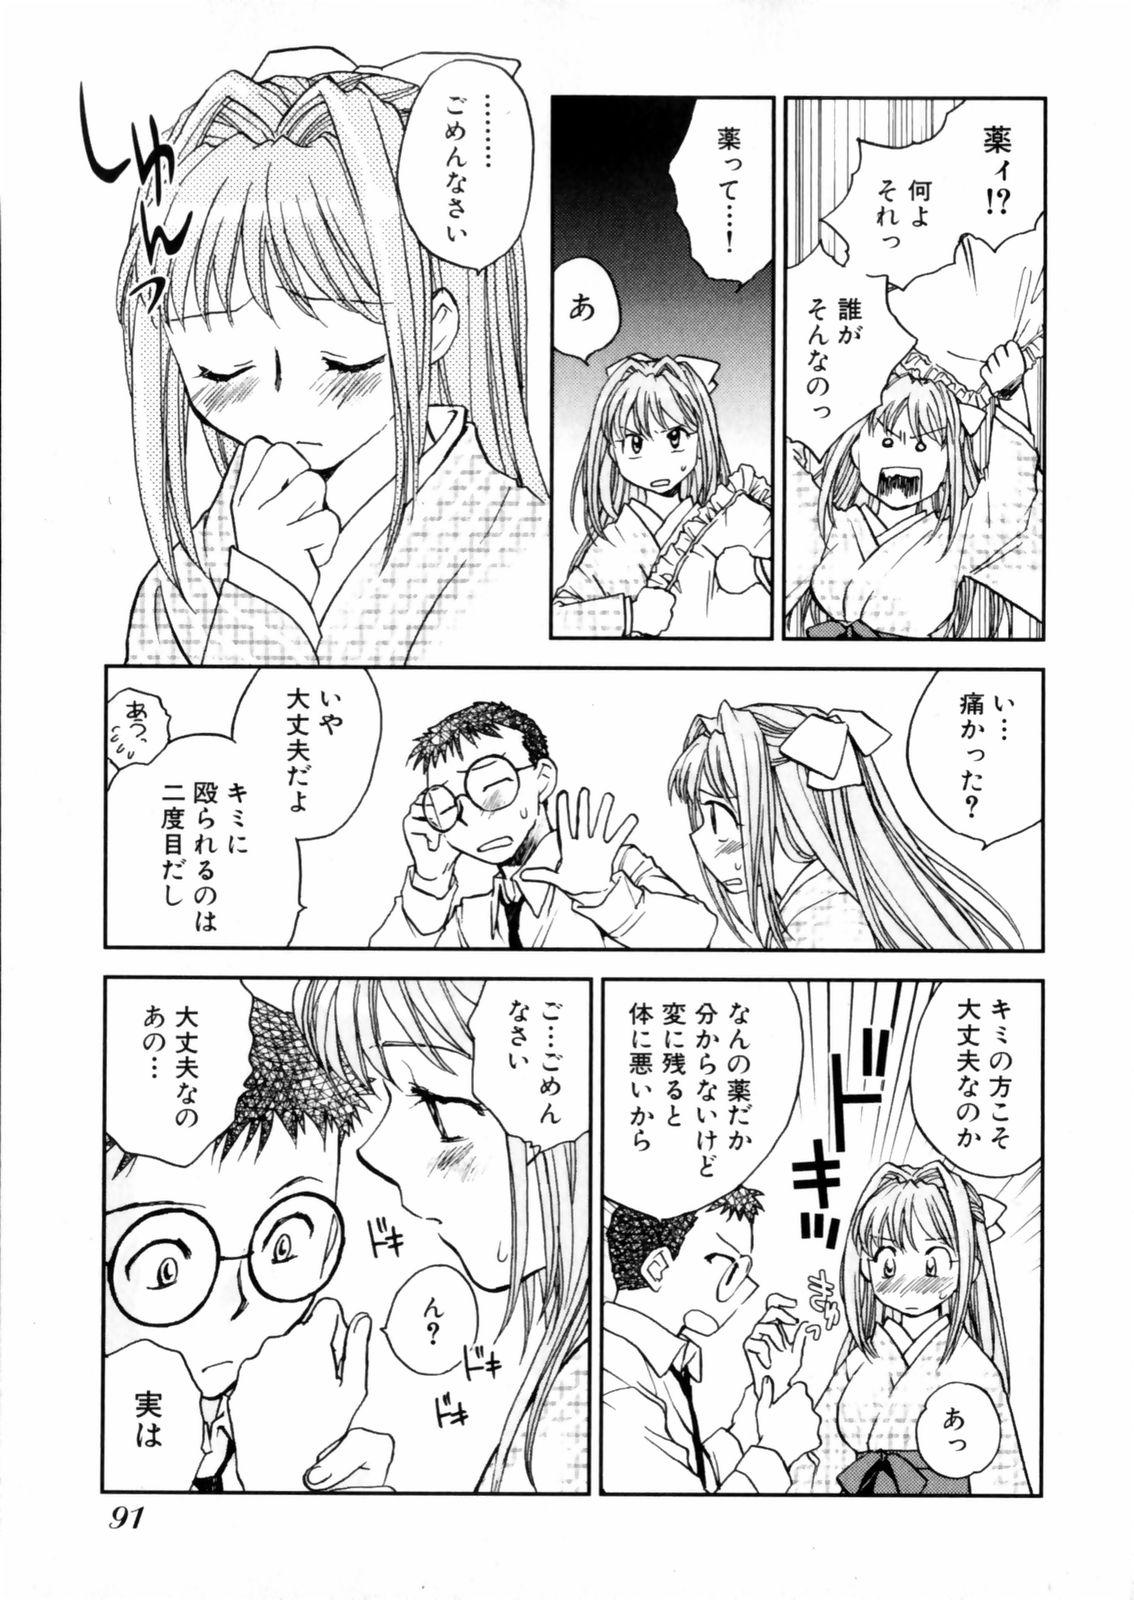 [Okano Ahiru] Hanasake ! Otome Juku (Otome Private Tutoring School) Vol.2 92